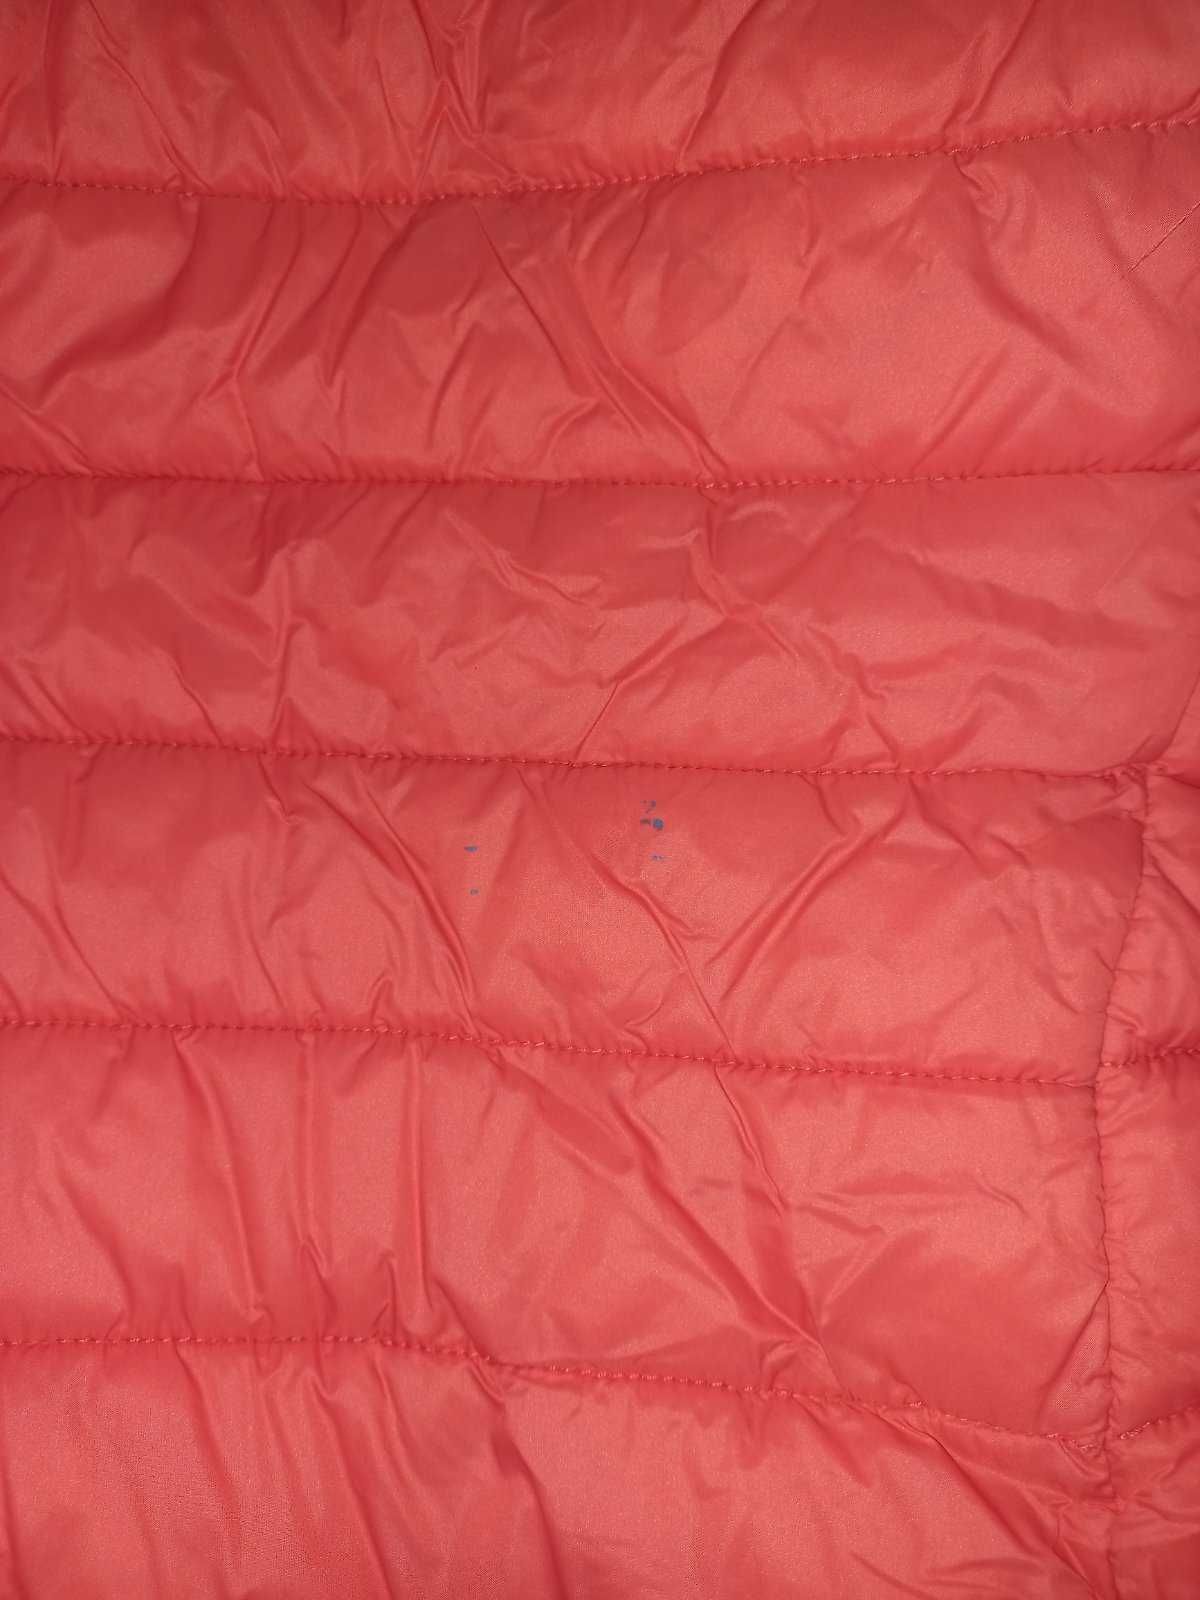 Коралова (помаранчева)куртка на дівчинку 4-6 років